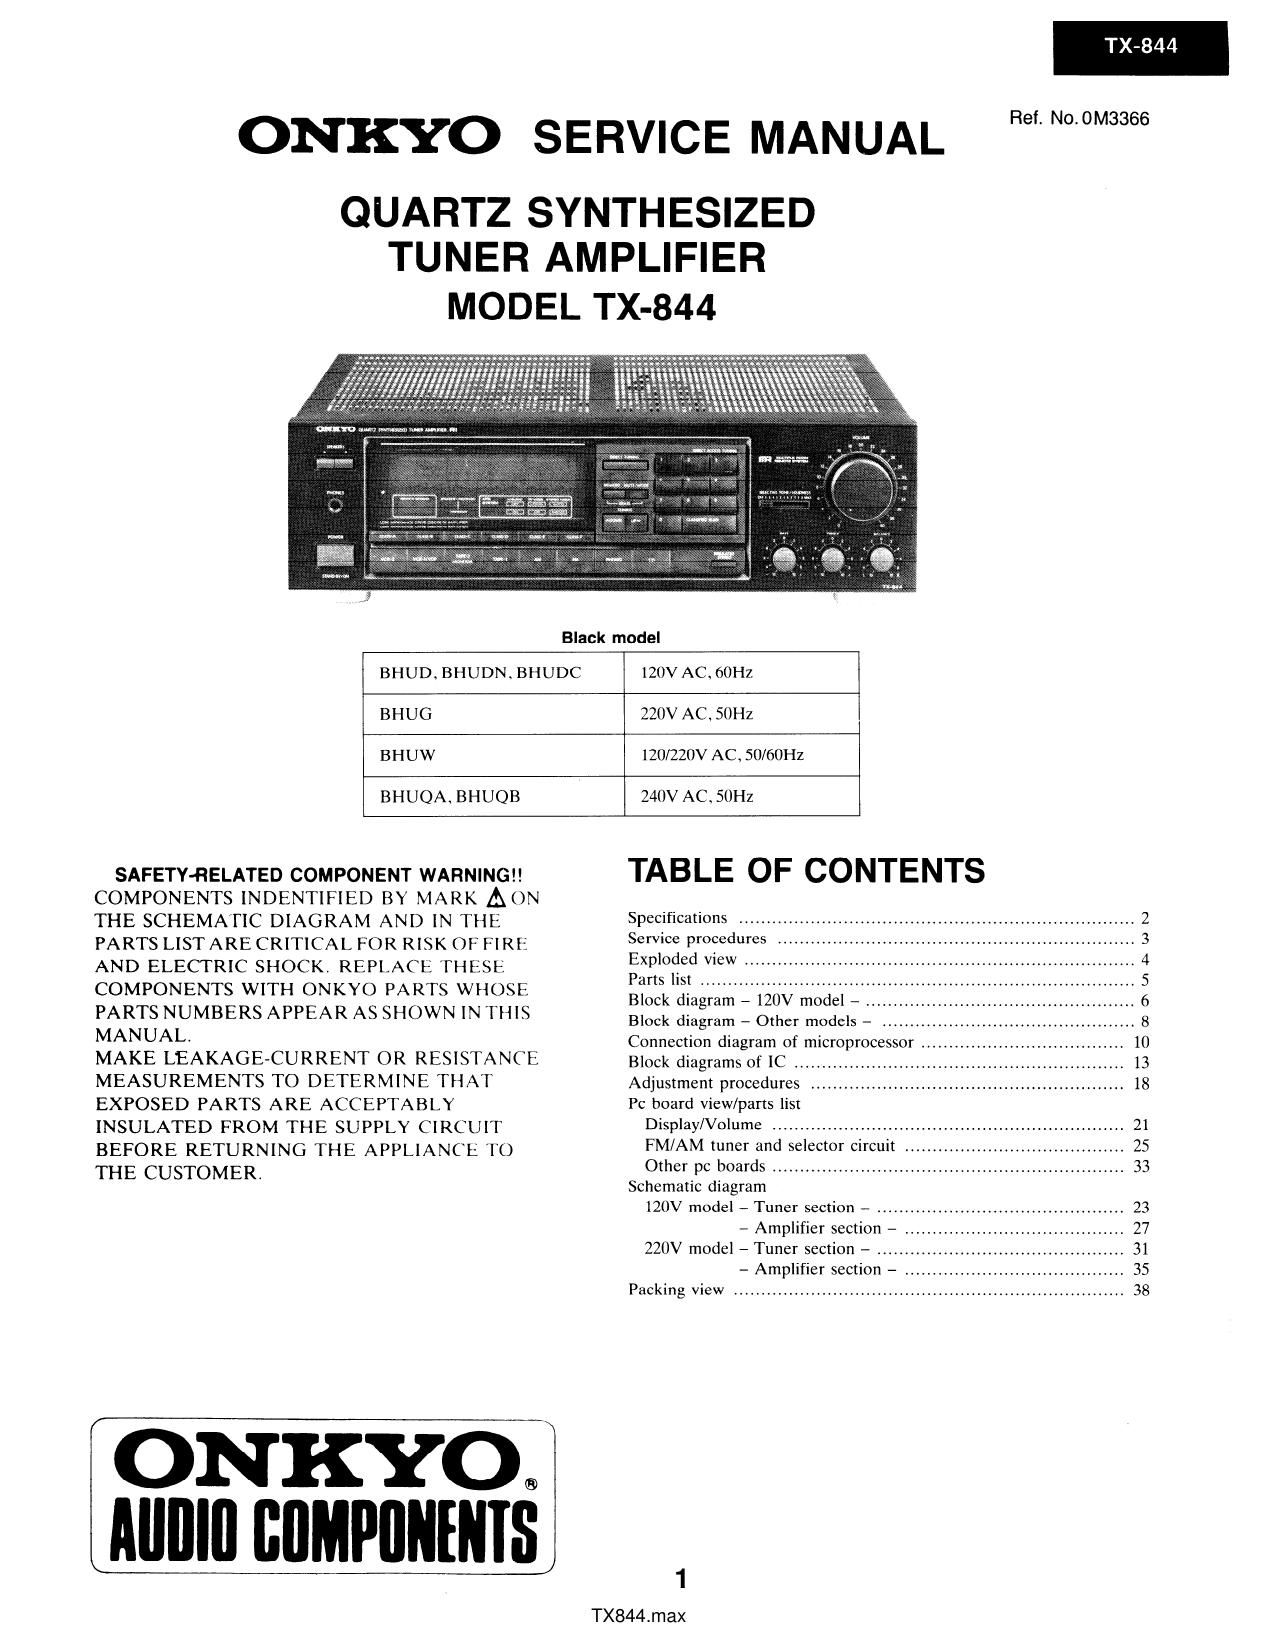 Onkyo TX 844 Service Manual